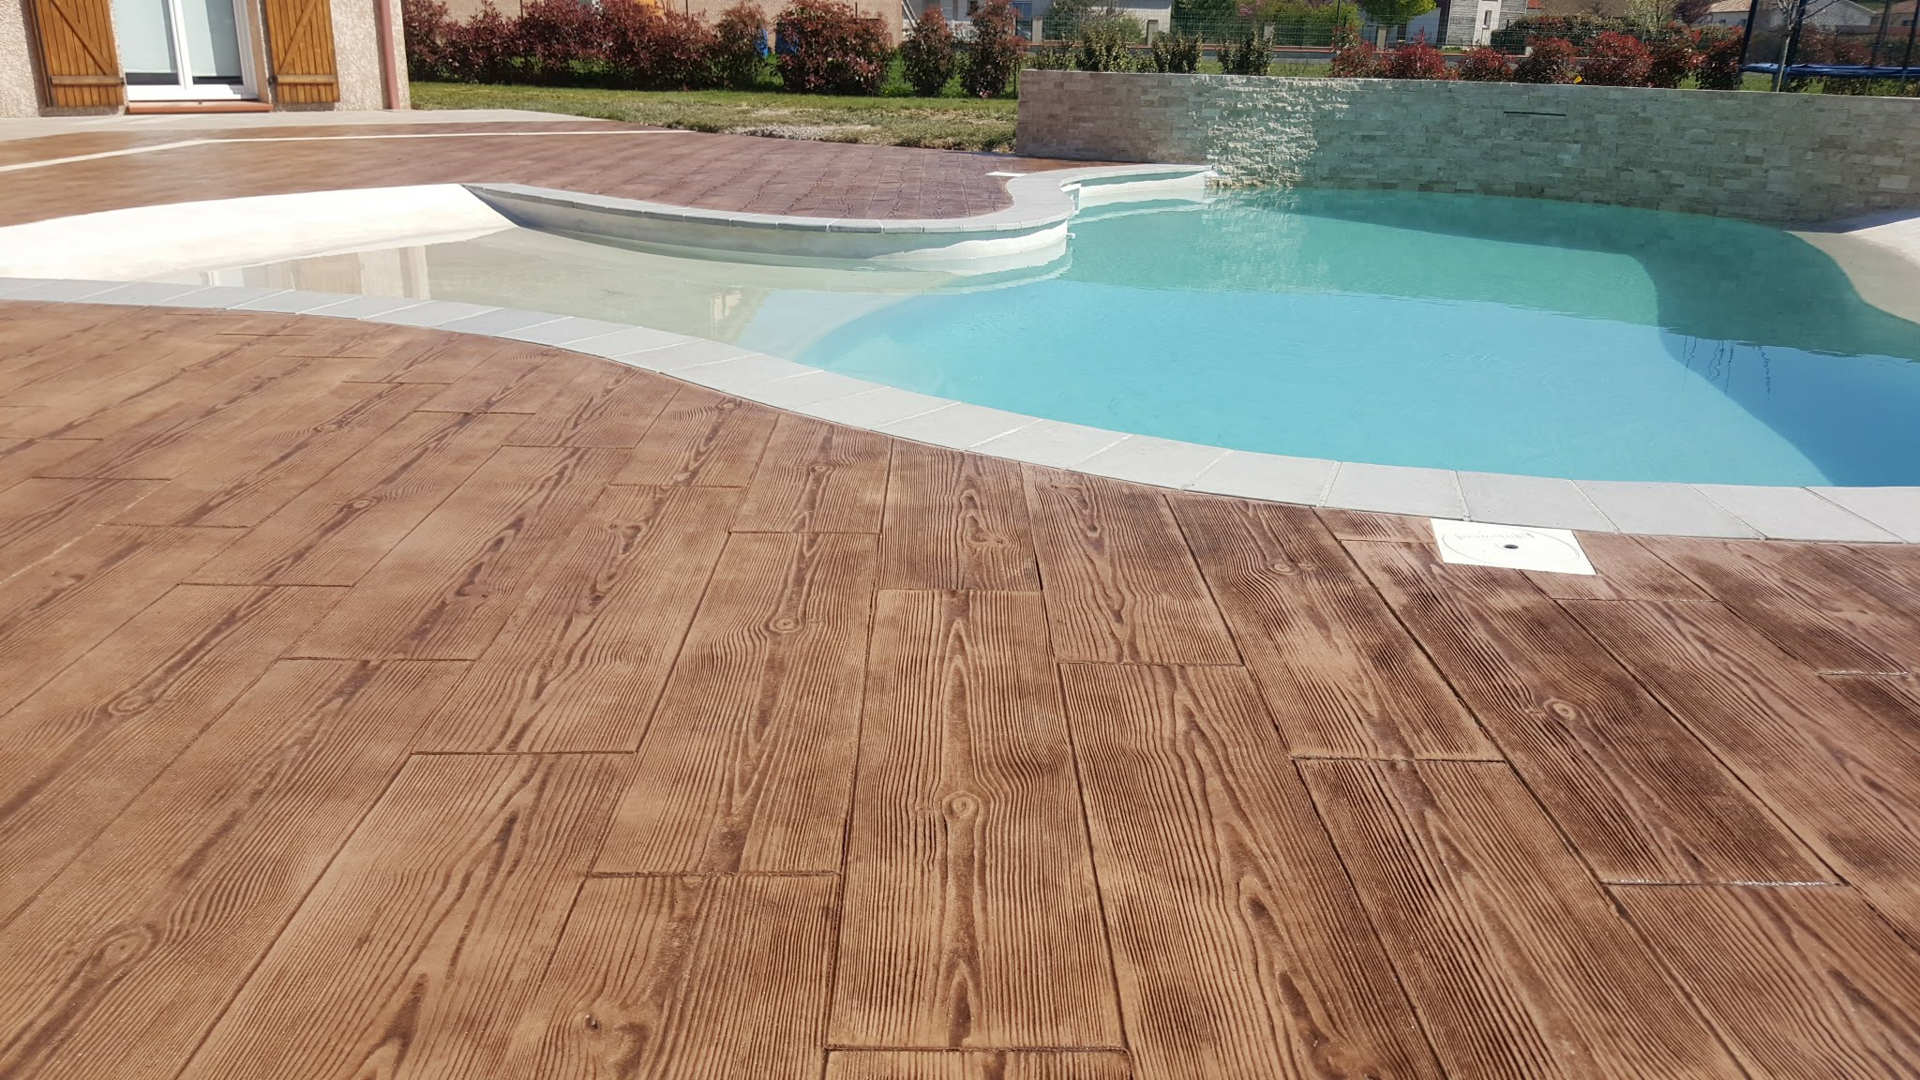 Gedruckter Beton Holzimitation auf dem Boden um den Pool herum